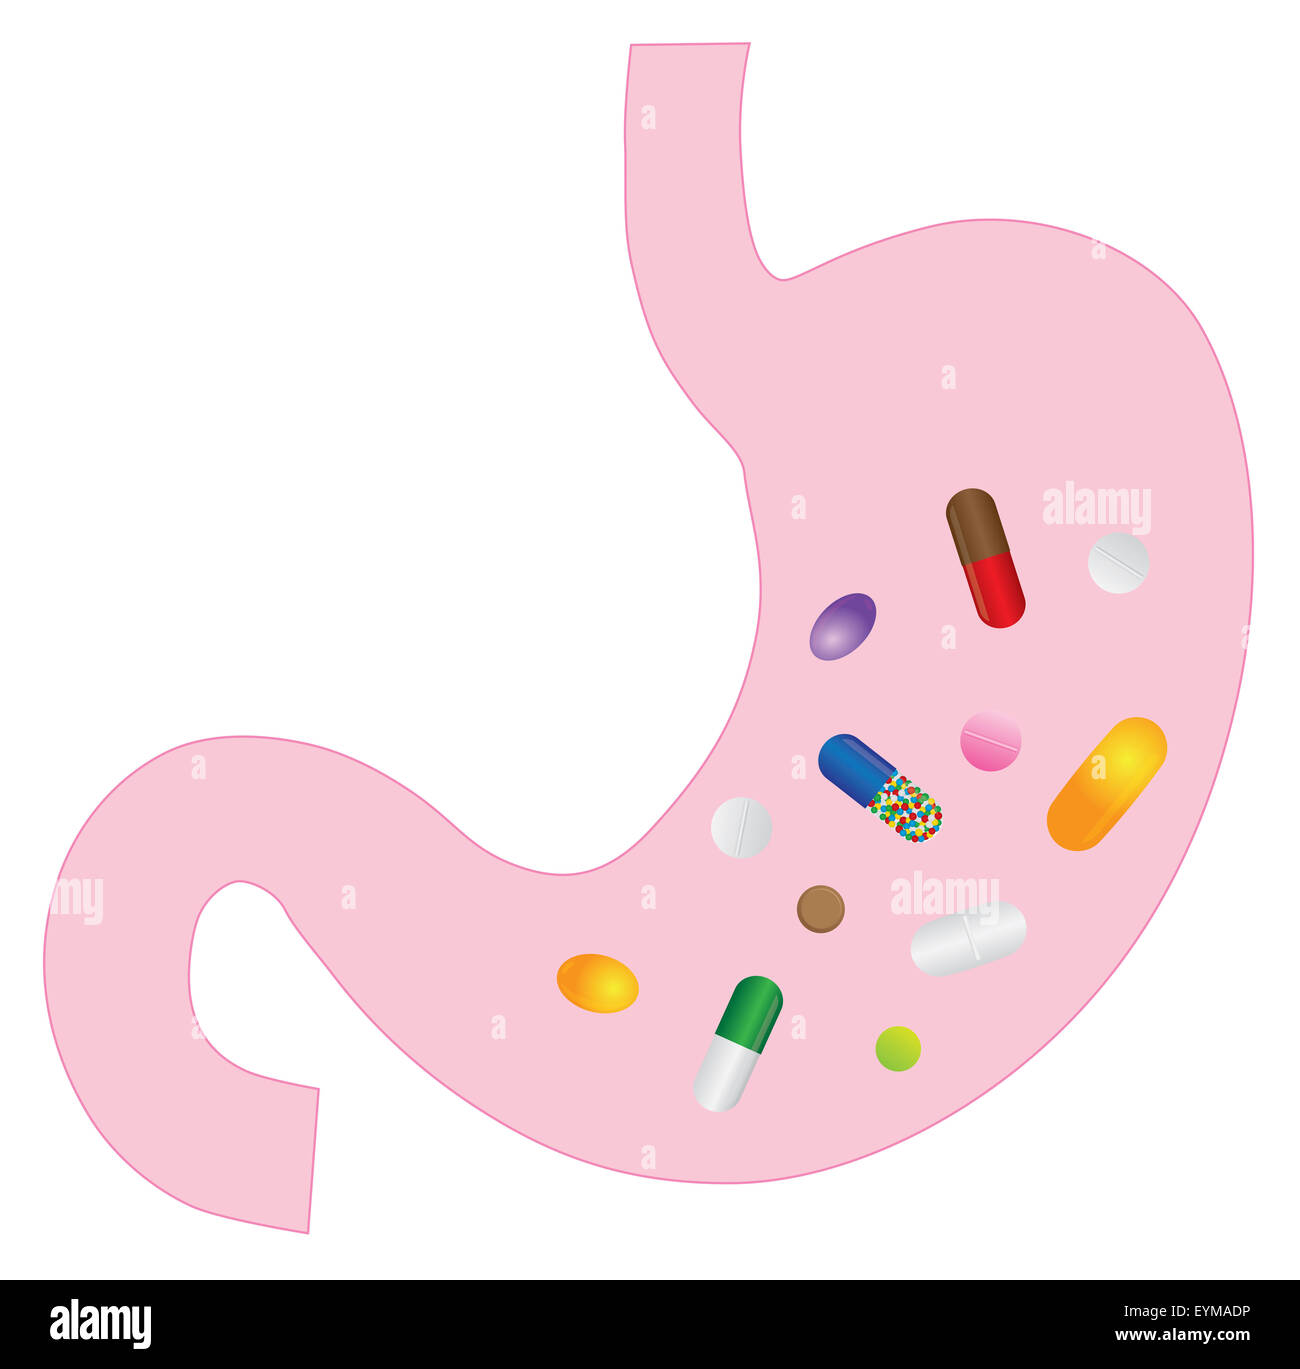 Stomaco umano anatomia con farmaci vitamine pillole farmaci capsule Illustrazione a colori Foto Stock